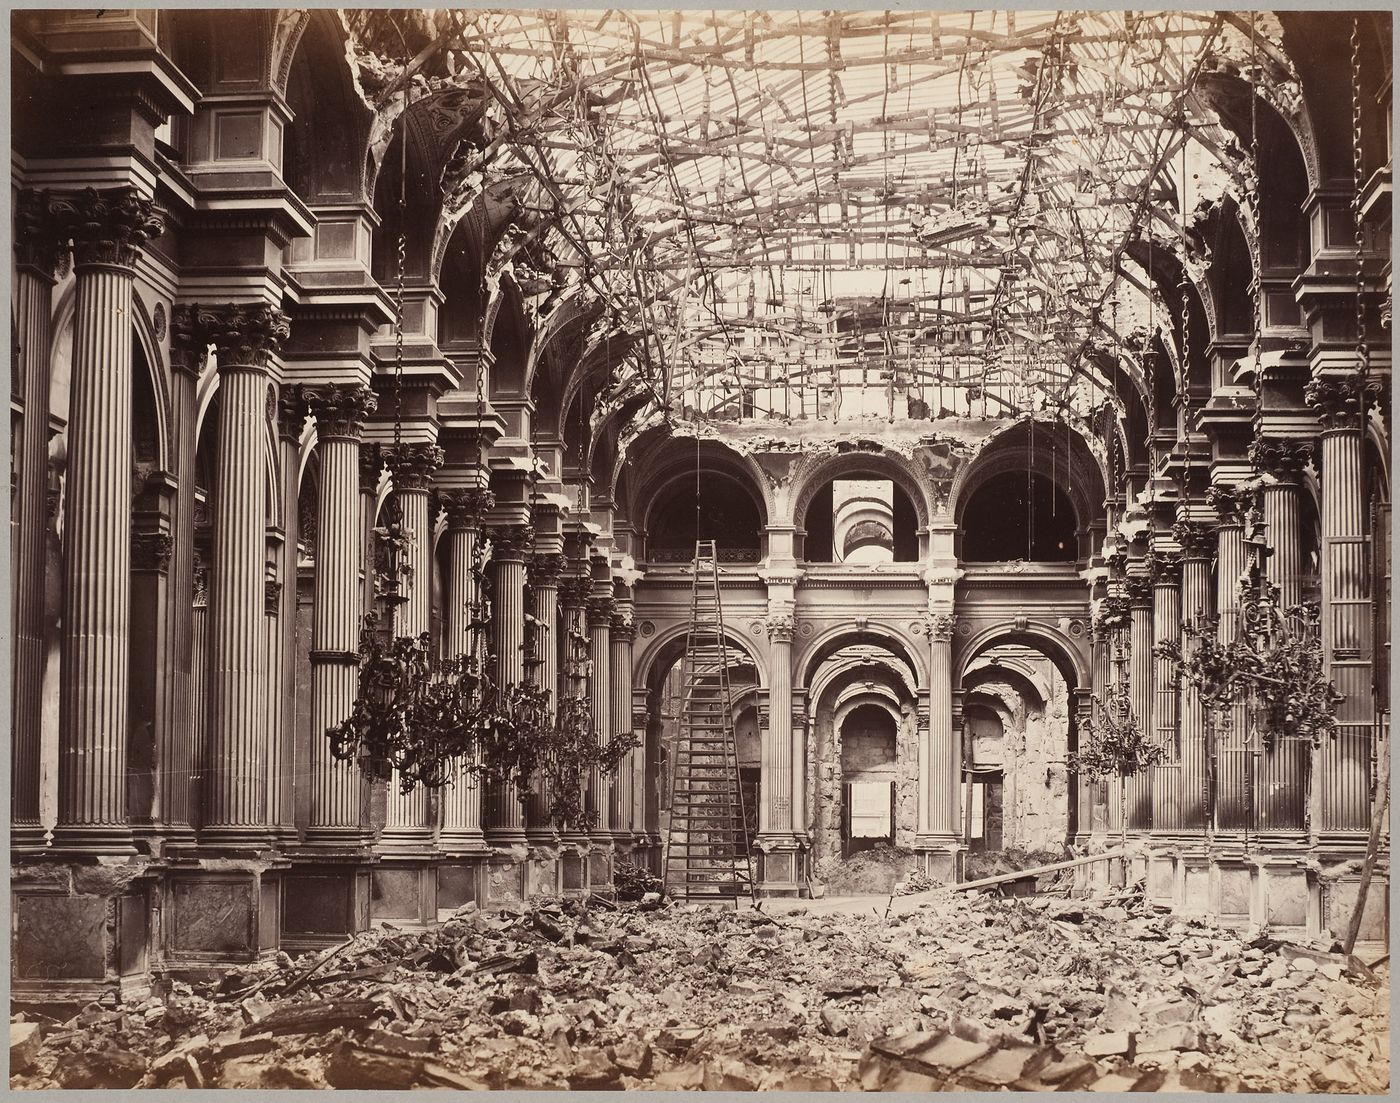 View of the destruction to Hôtel de Ville Galerie des Fêtes interior after the Paris Commune, Paris, France